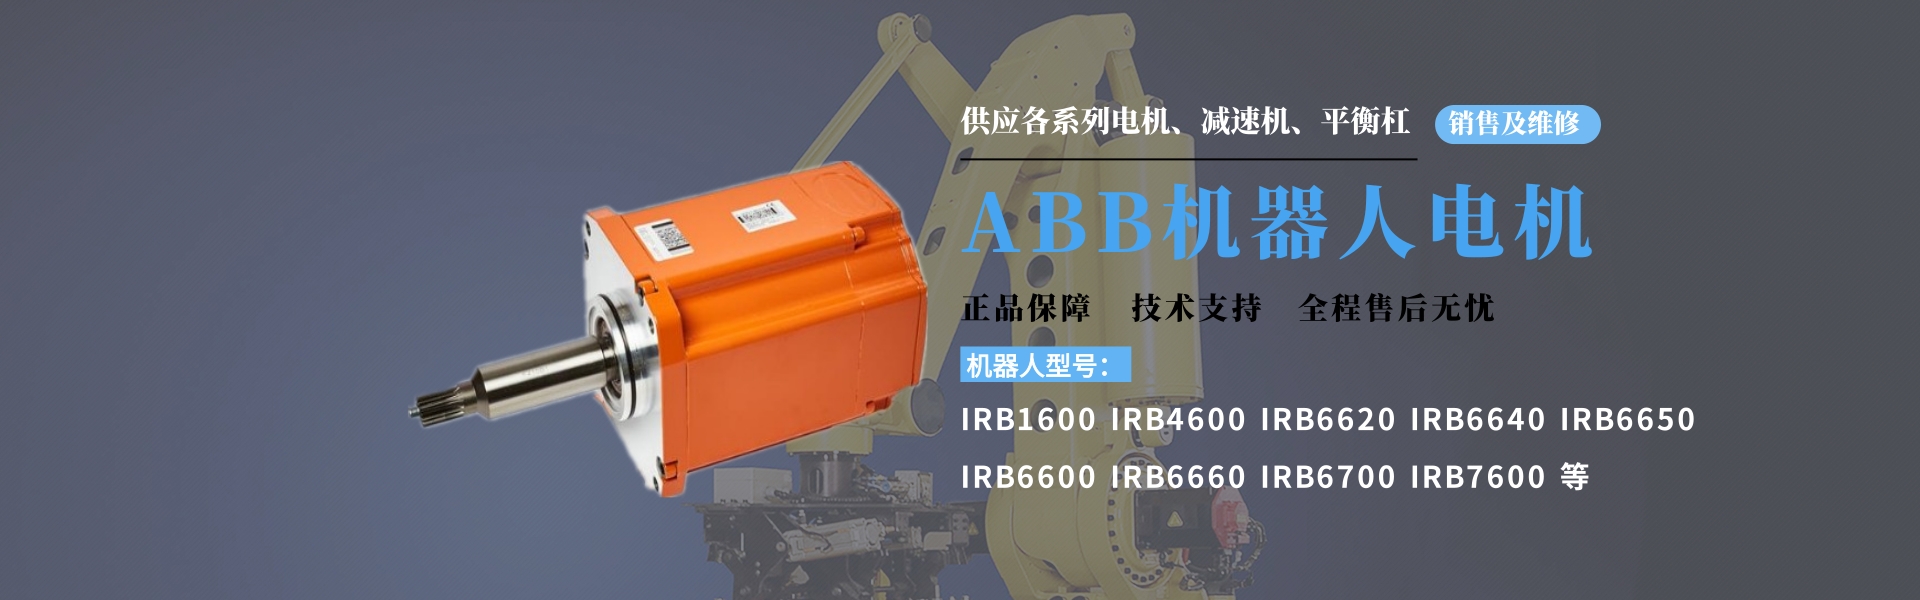 ABBIRB6600机器人电机3HAC17484-6 现货 维修 ABBIRB6600机器人电机,ABB6600机器人电机3HAC17484-6,ABB6600机器人电机维修,ABB机器人电机3HAC17484-6,ABB6600机器人马达